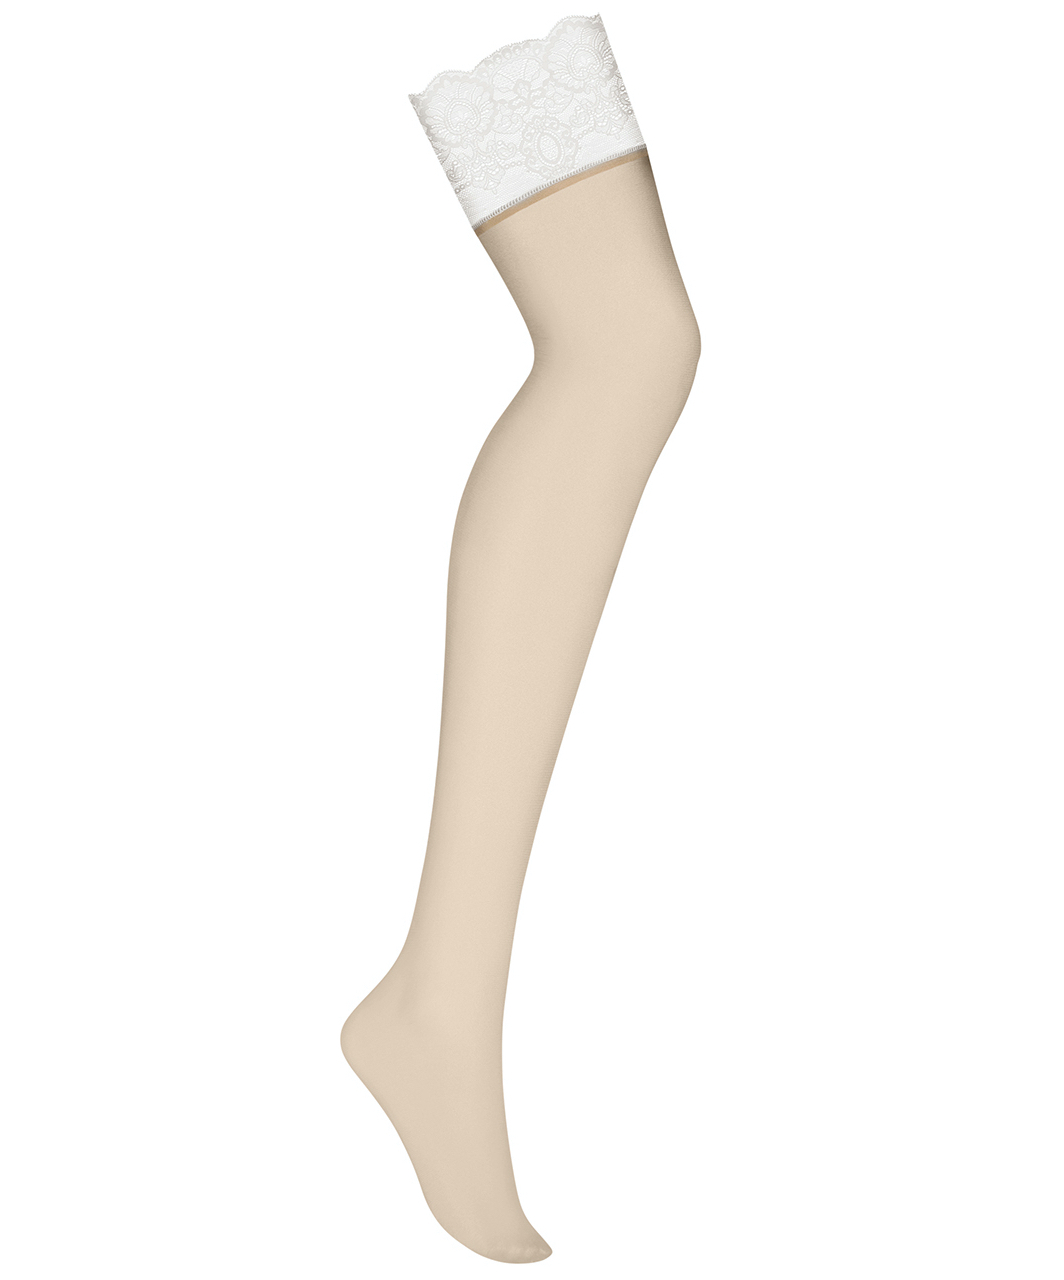 Obsessive light skin tone suspender stockings